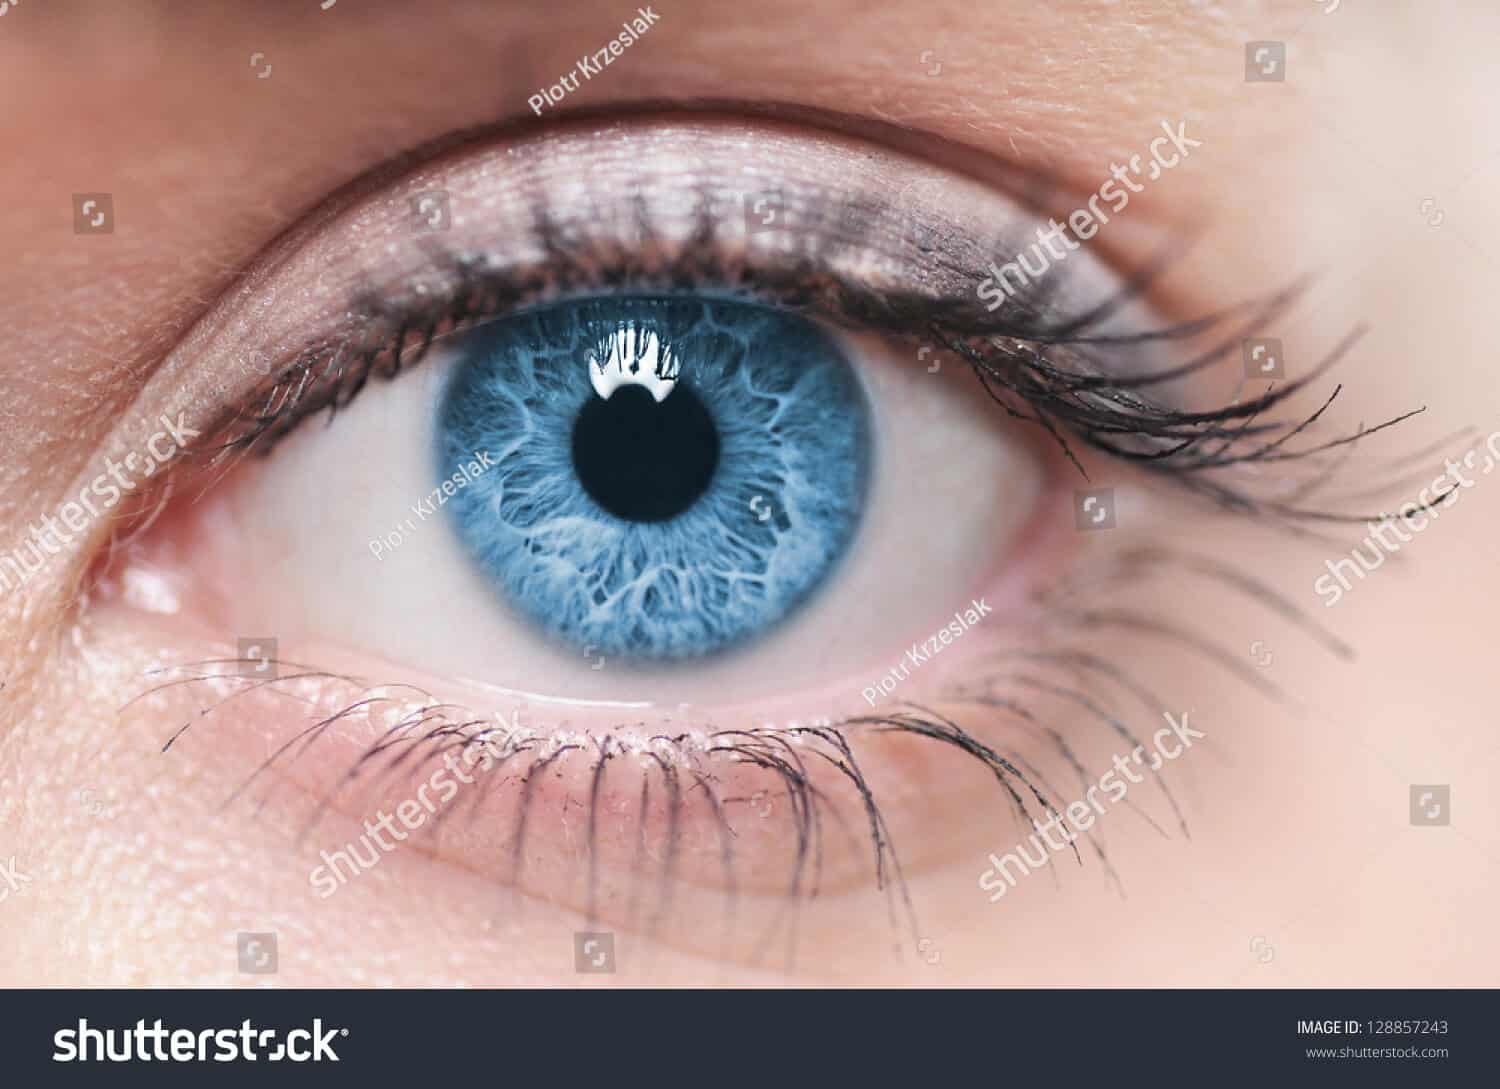 8 triệu hình ảnh đôi mắt chất lượng cao trên Shutterstock